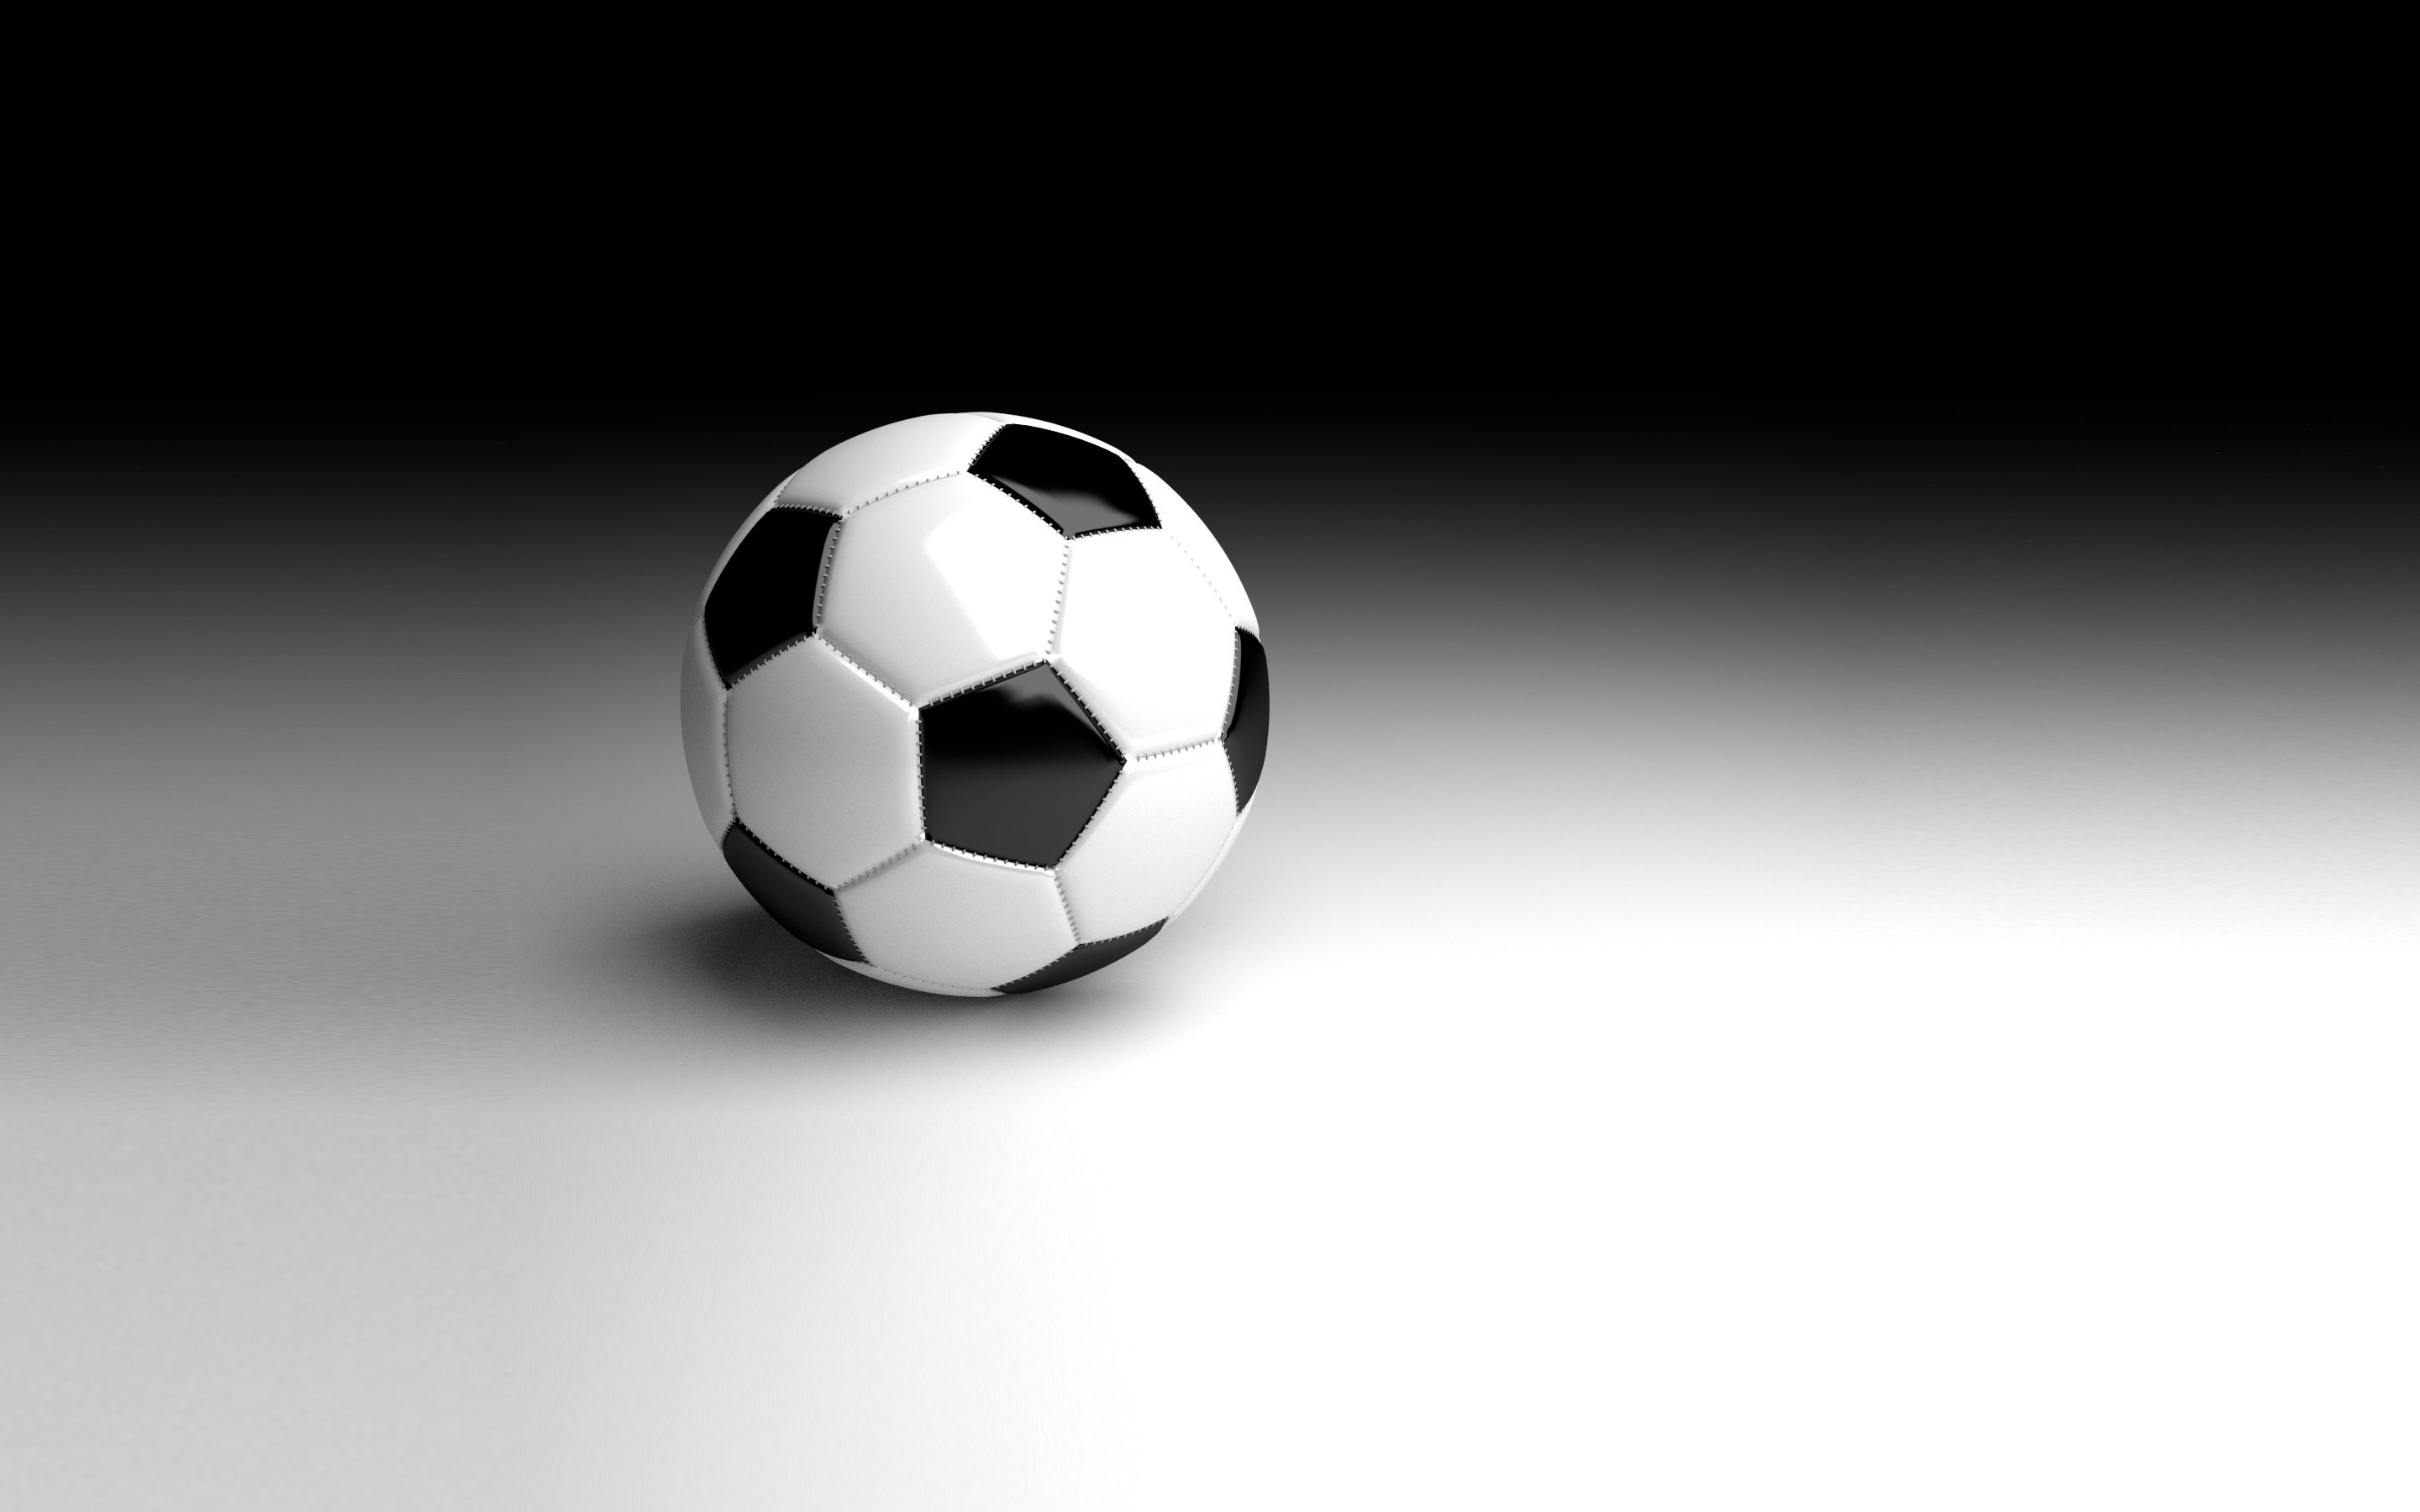 ball wallpaper,soccer ball,football,ball,sports equipment,ball